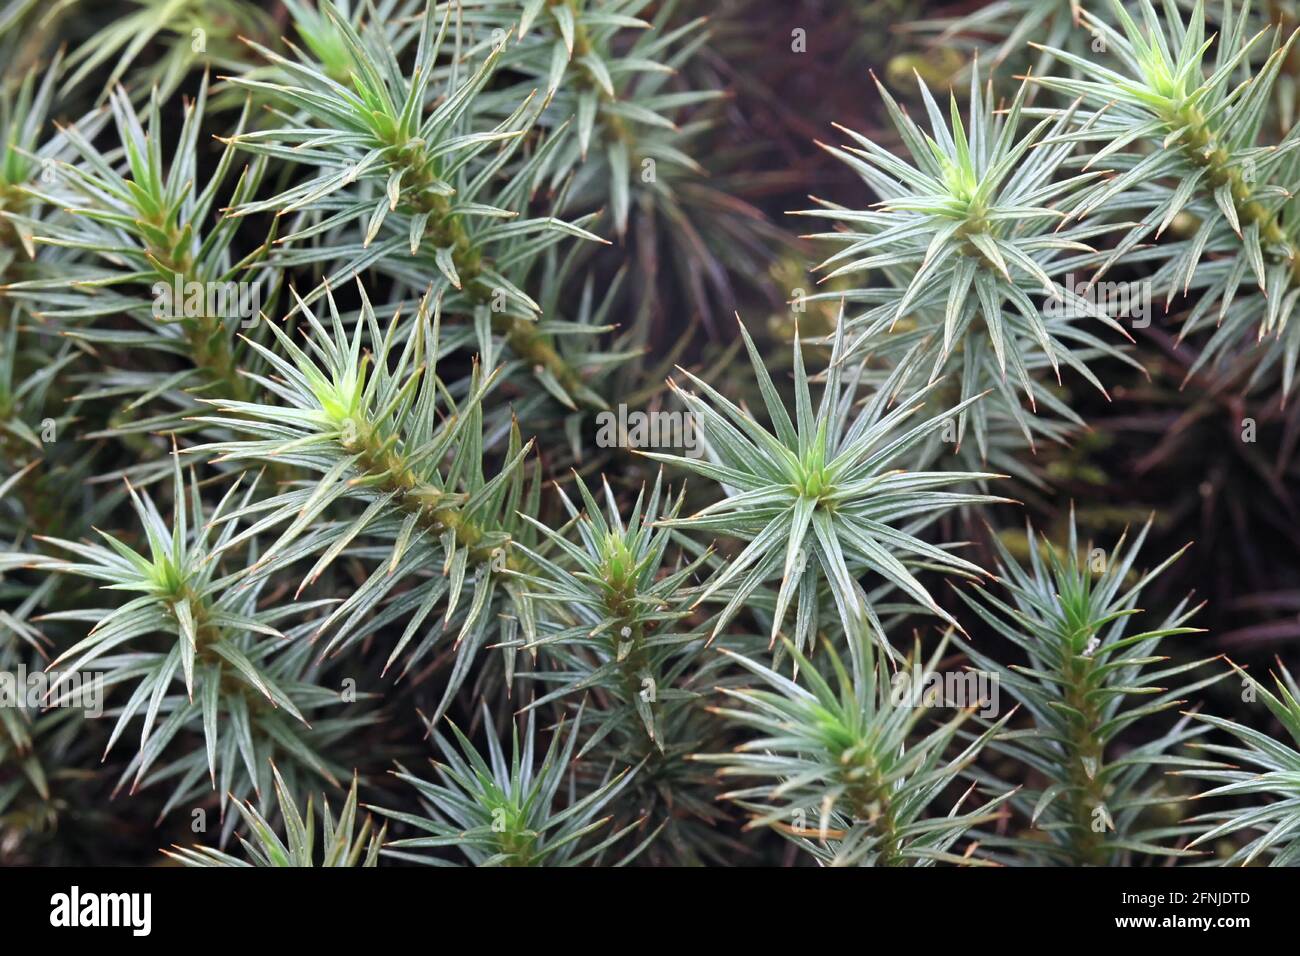 Polytrichum juniperinum, comunemente noto come ginepro haircap o juniper polytrichum muss, una specie sempreverde e perenne di muschio finlandese Foto Stock